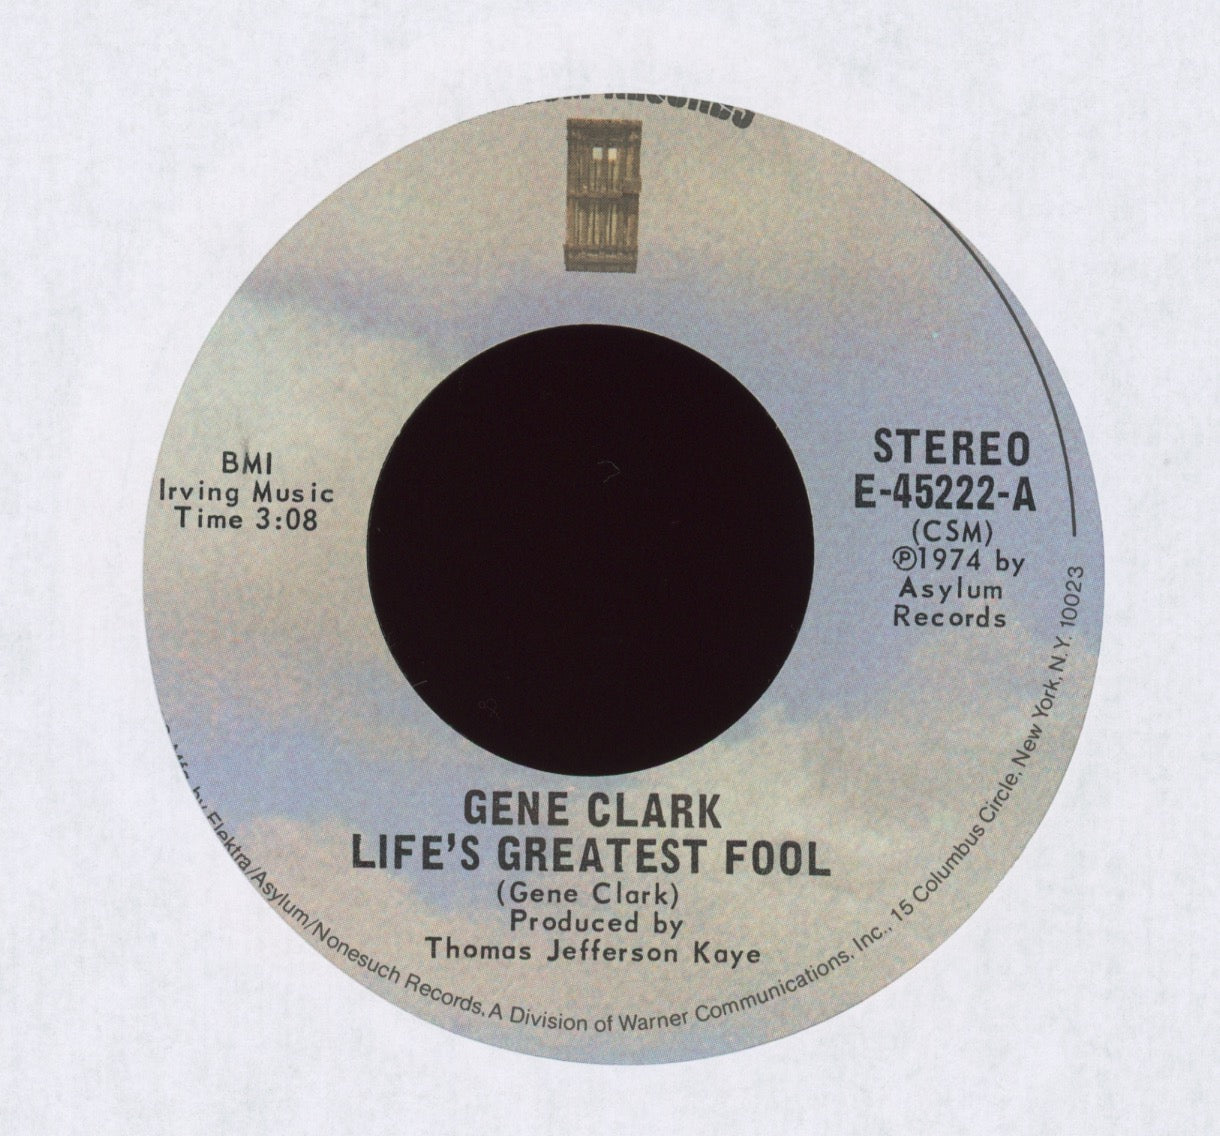 Gene Clark - Life's Greatest Fool on Asylum